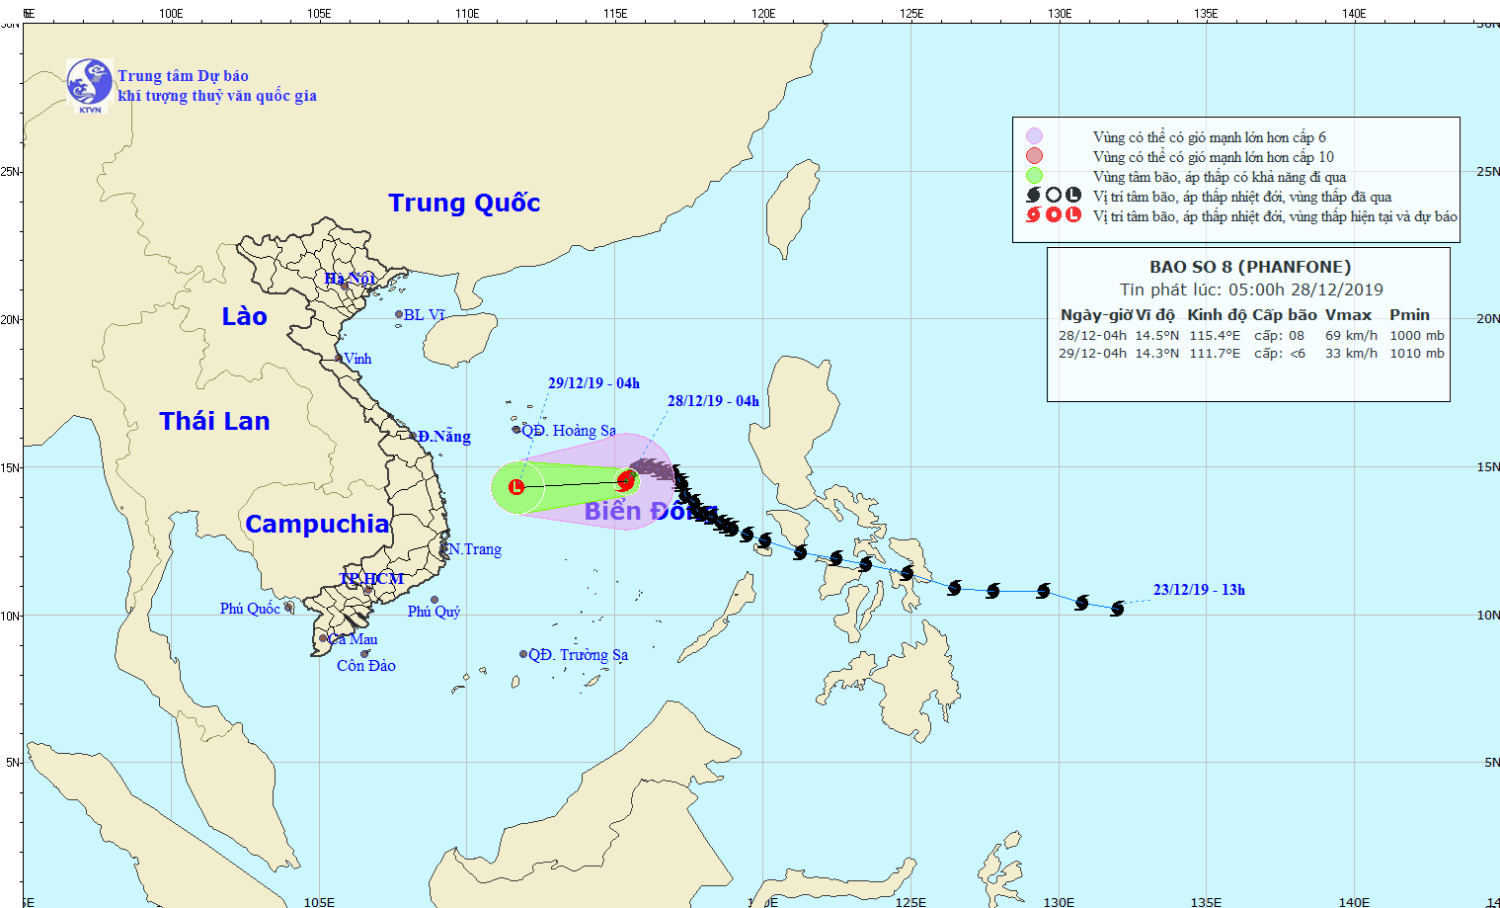 Tin bão trên Biển Đông - cơn bão số 08 (05h00 ngày 28/12)